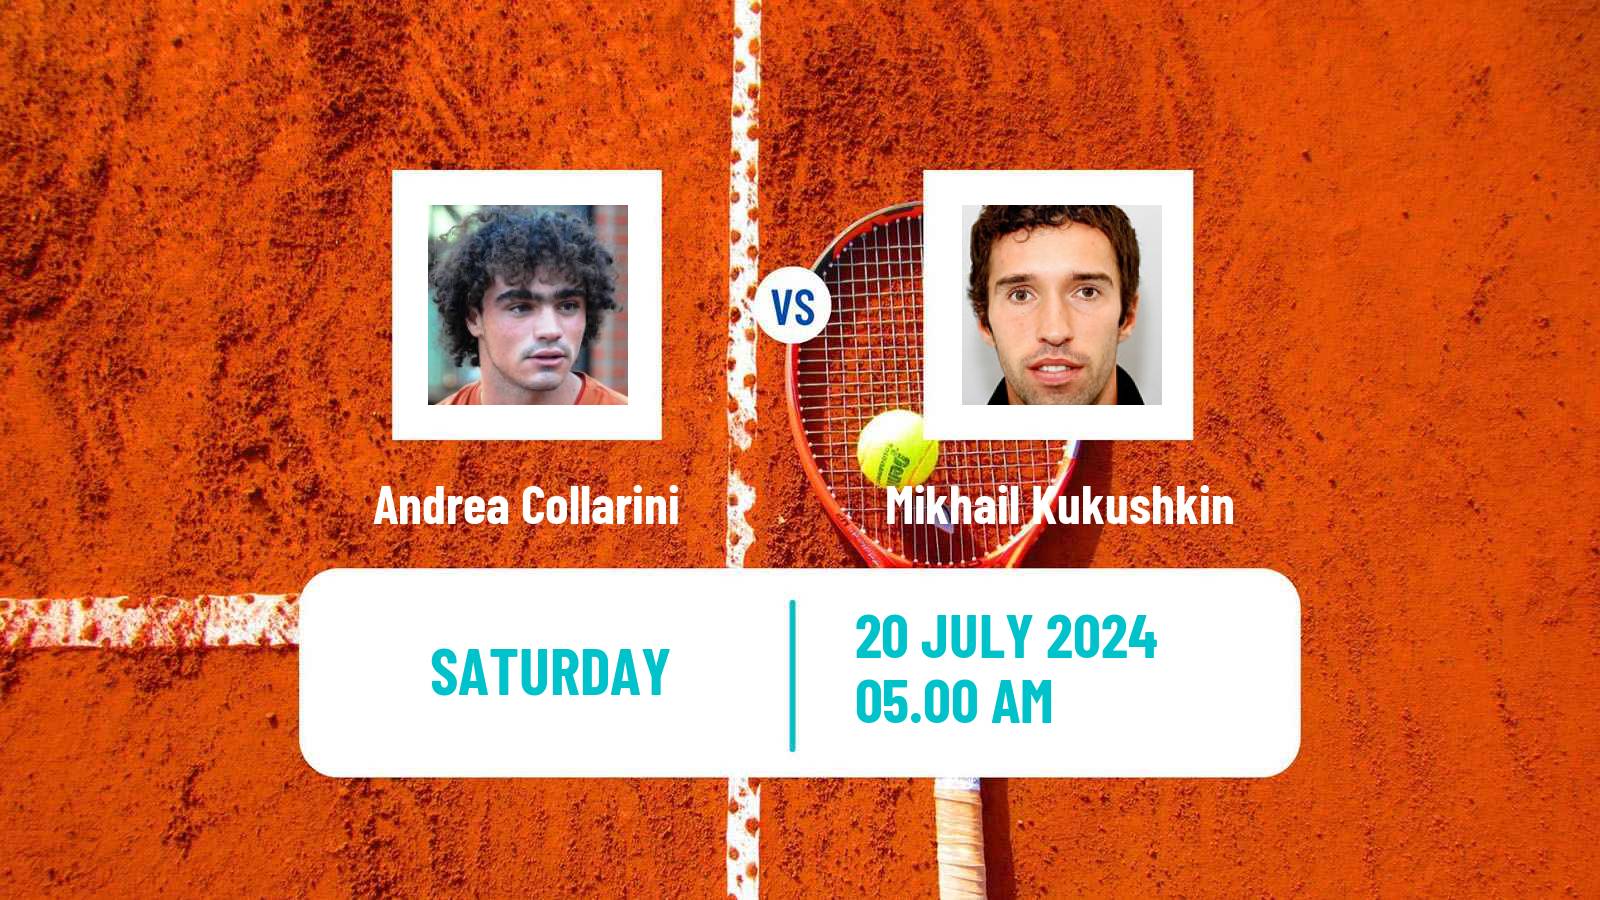 Tennis ATP Kitzbuhel Andrea Collarini - Mikhail Kukushkin